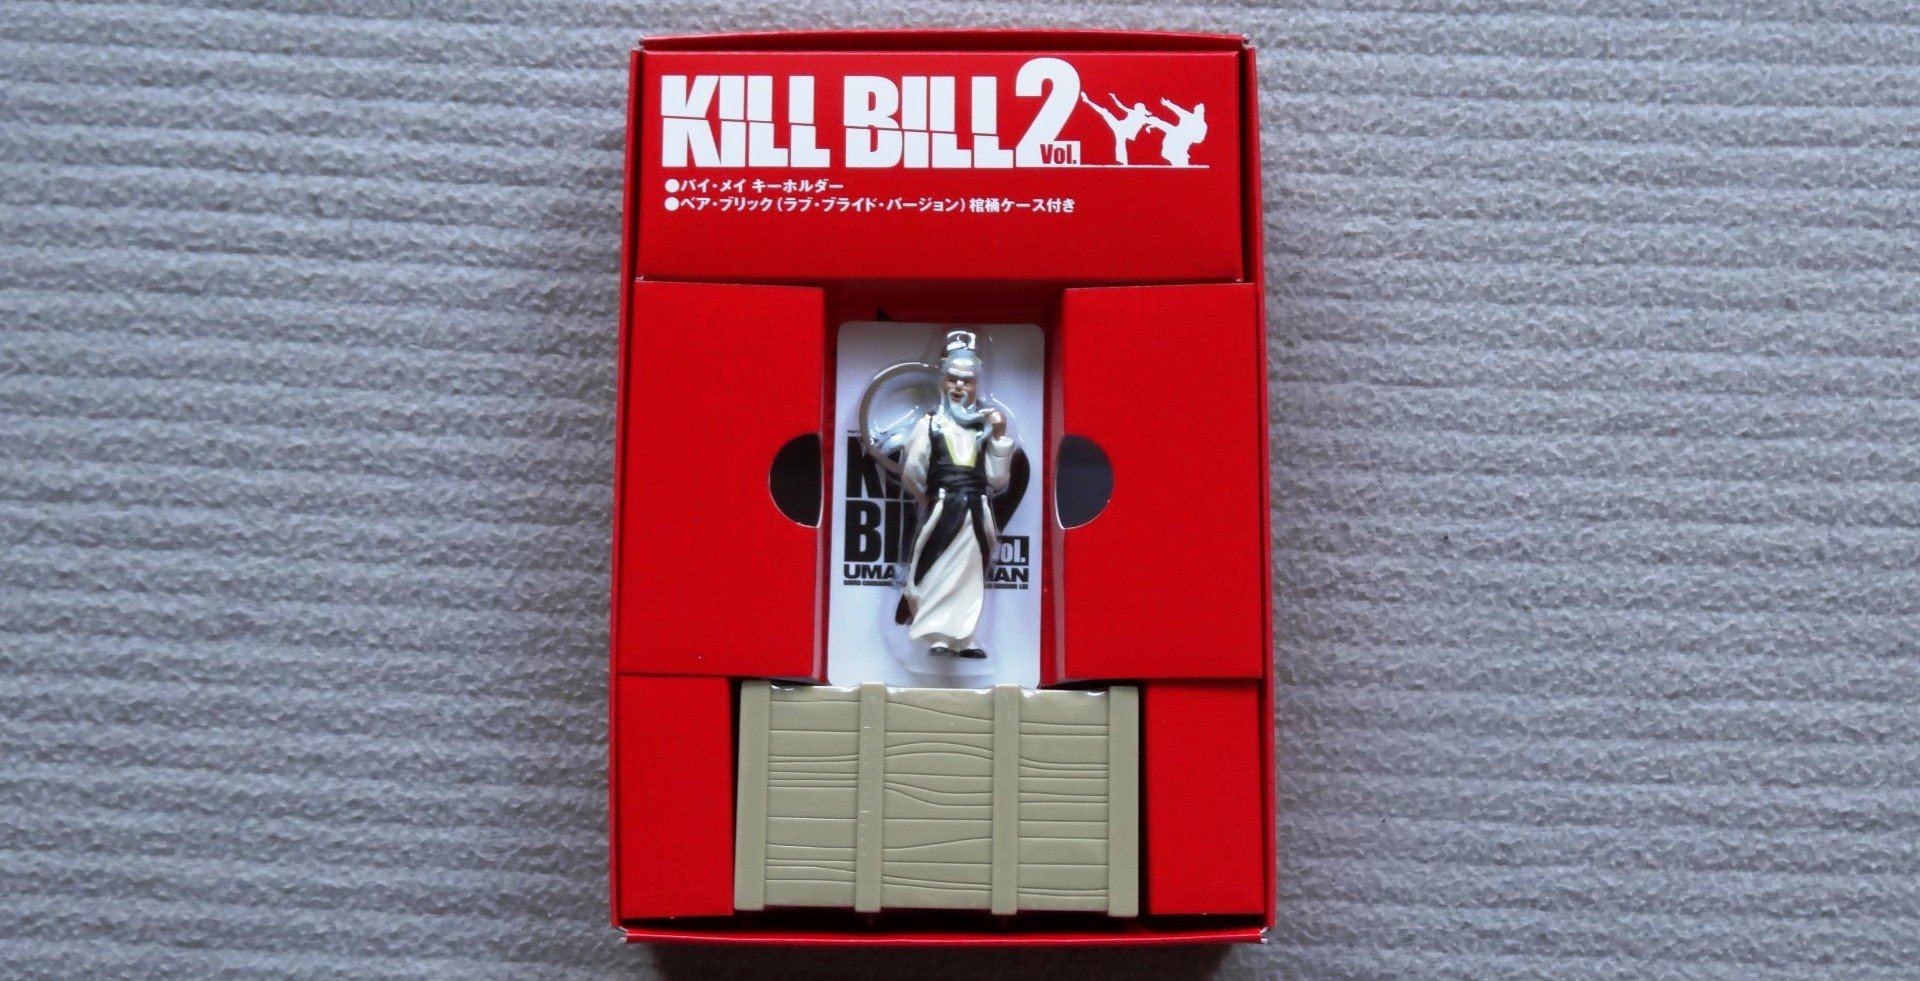 KILL BILL VOL.2